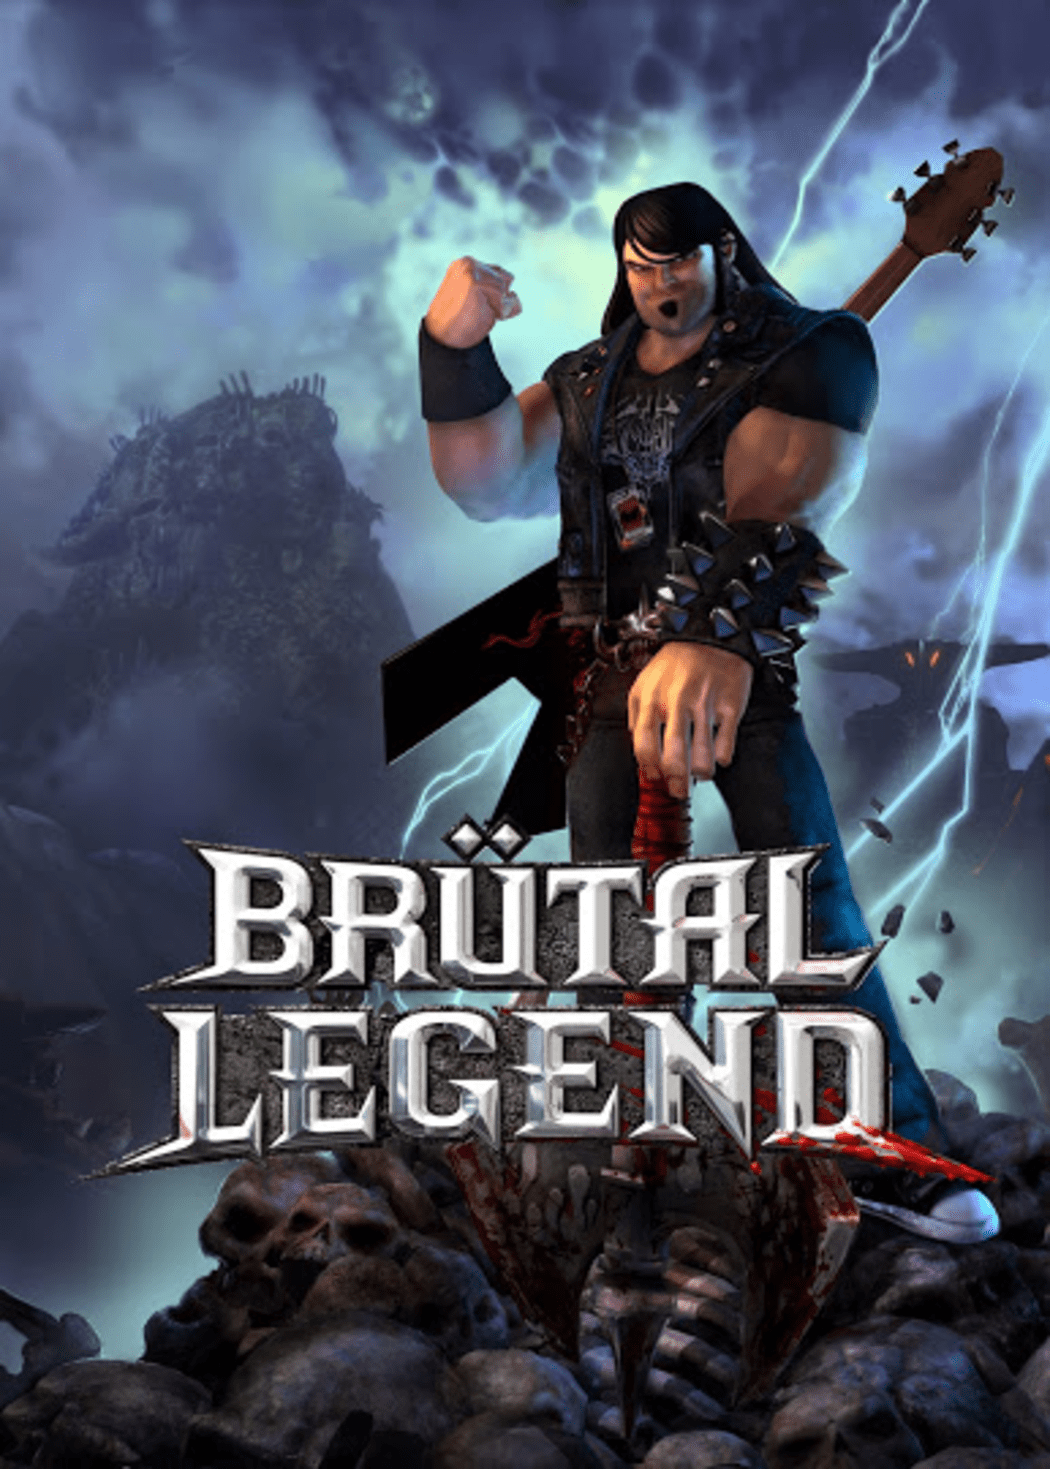 brutal legend soundtrack mp3